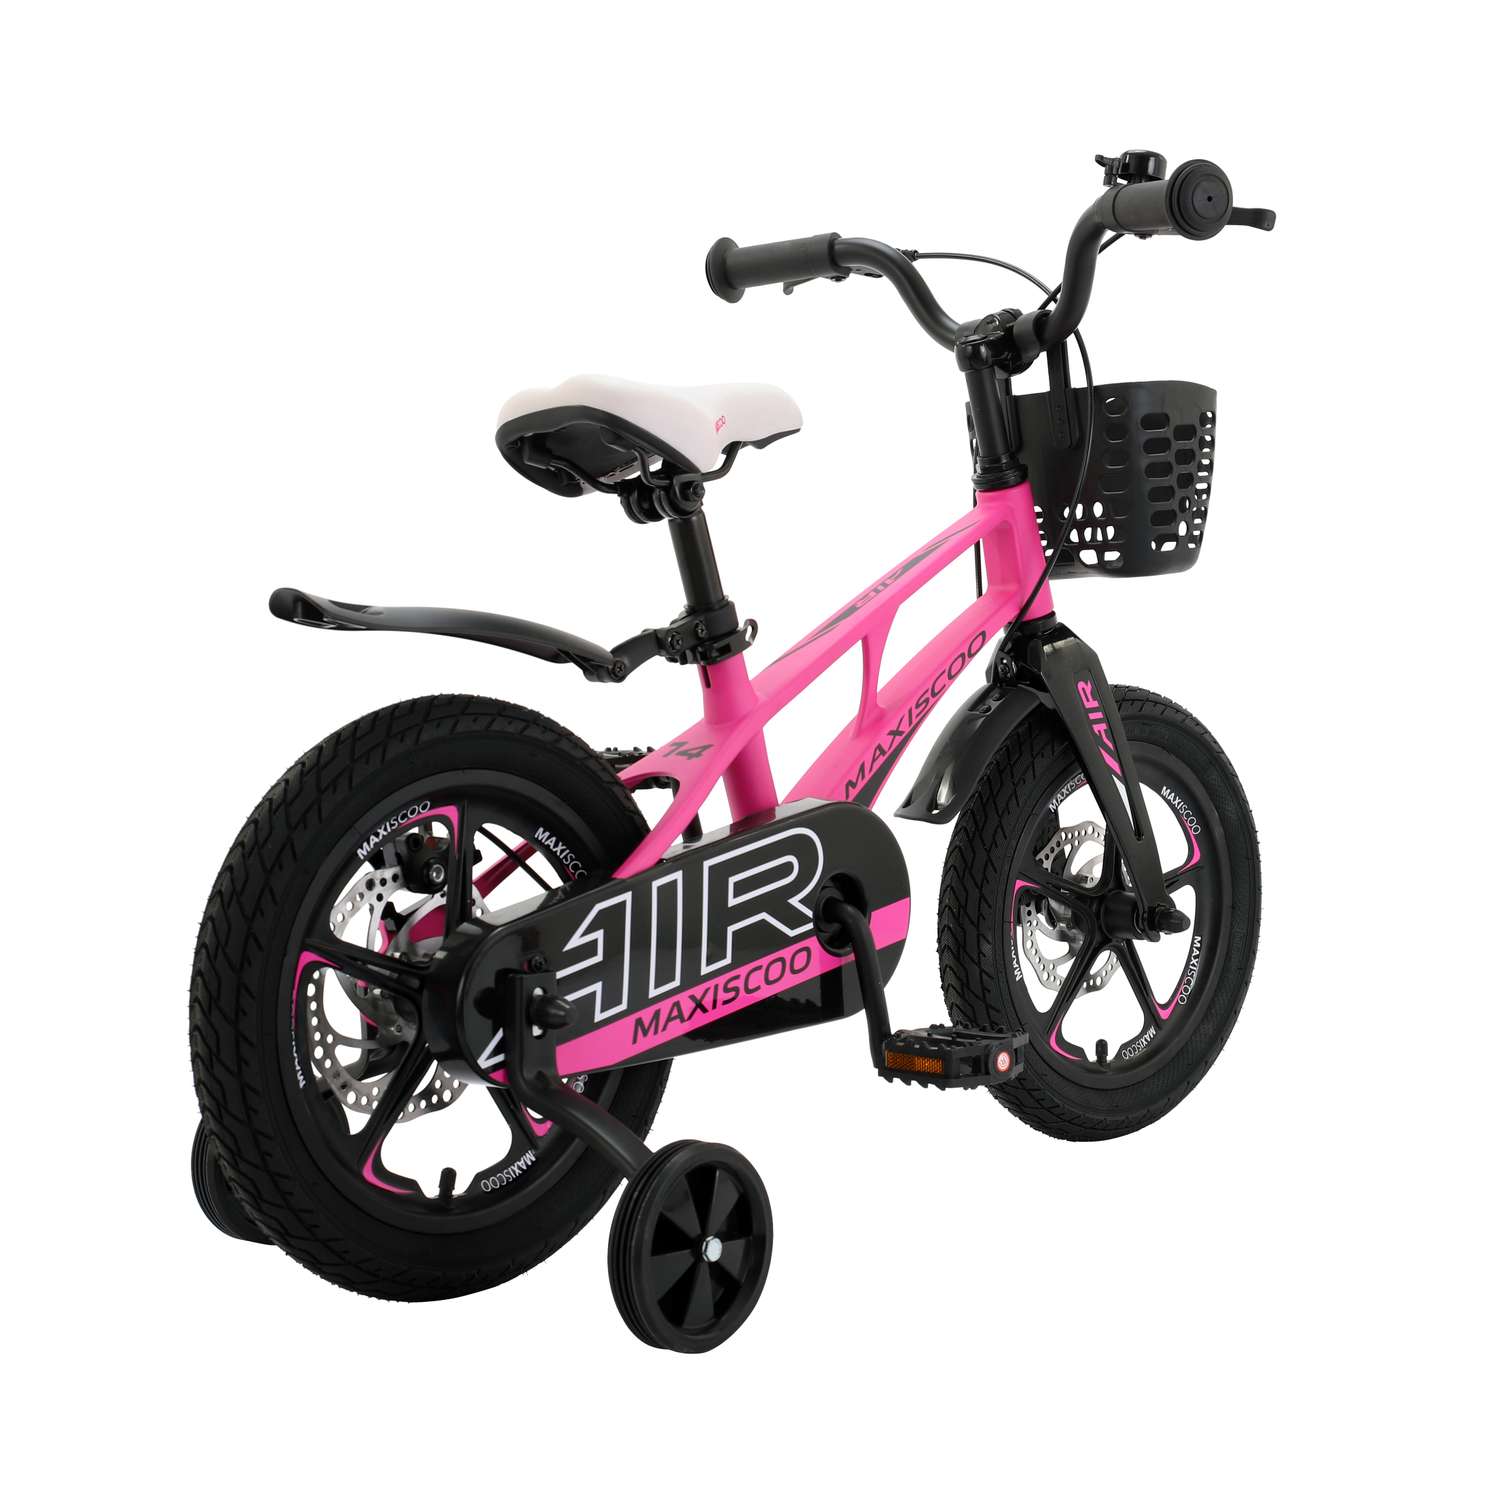 Детский двухколесный велосипед Maxiscoo Air делюкс плюс 14 розовый матовый - фото 4